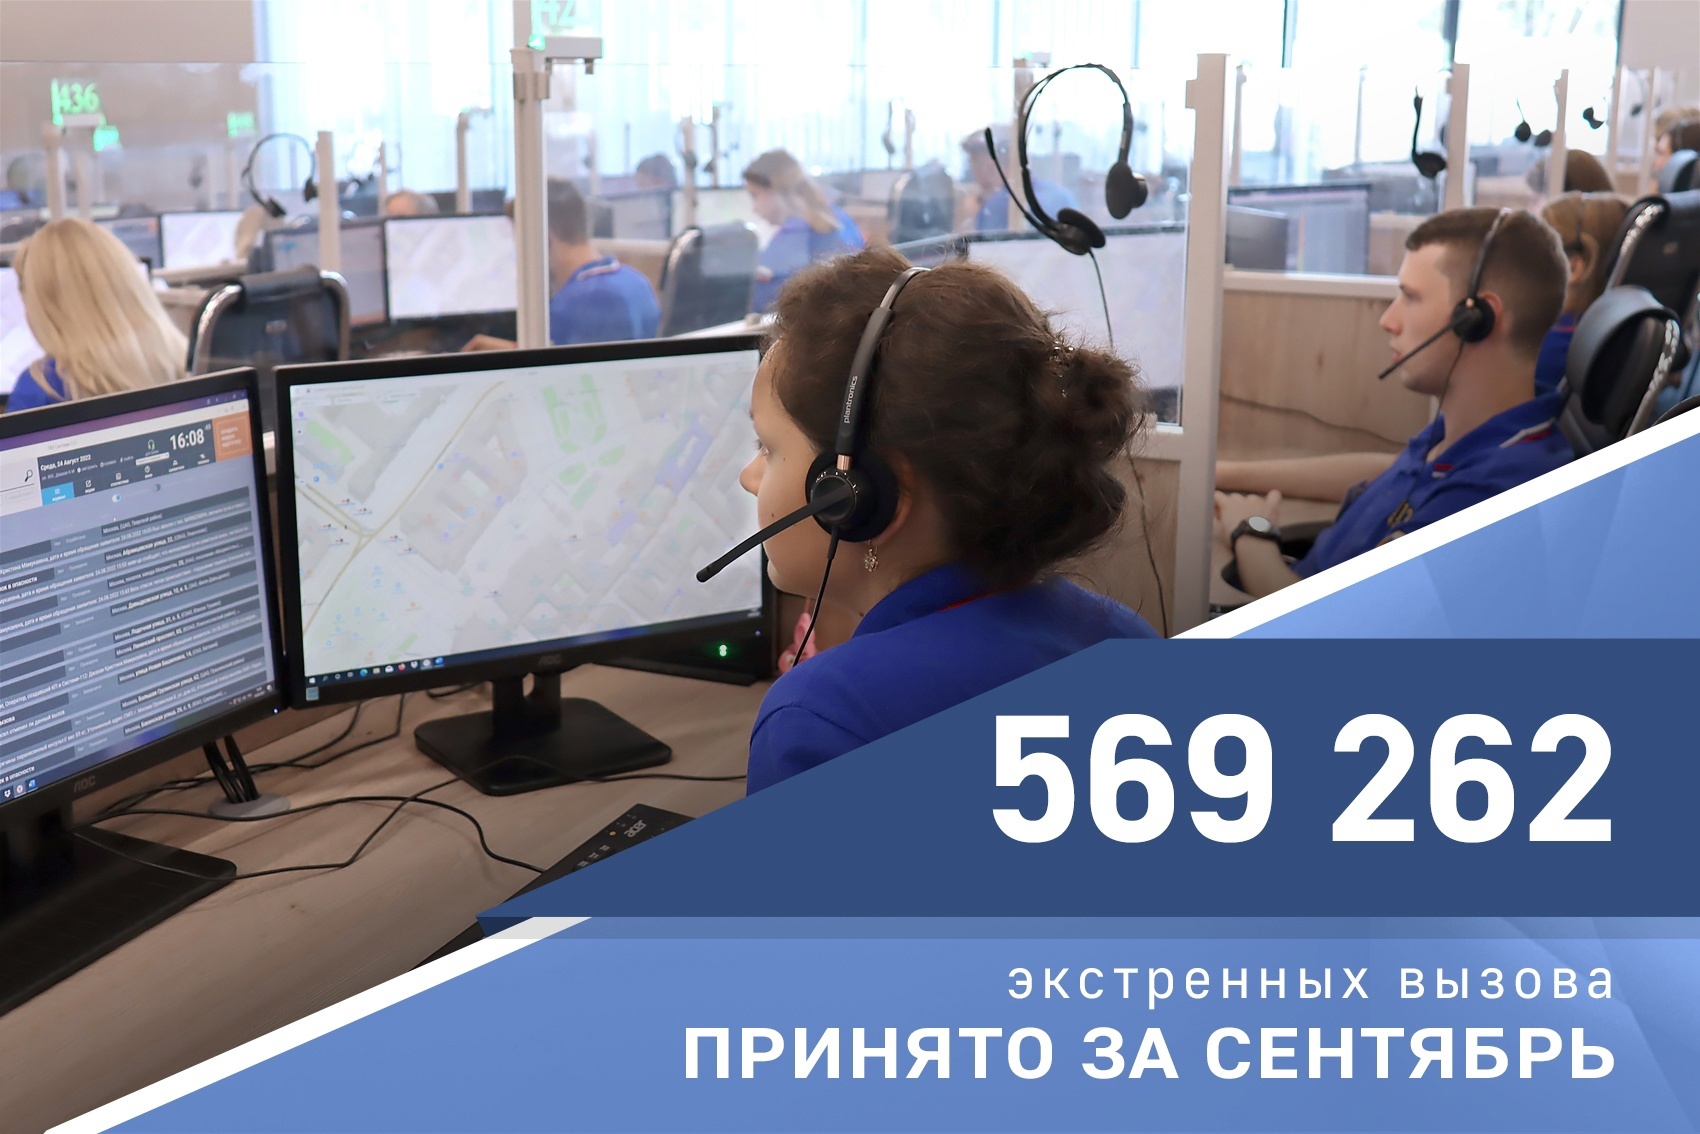 Операторы Службы 112 Москвы приняли 570 тысяч вызовов за сентябрь